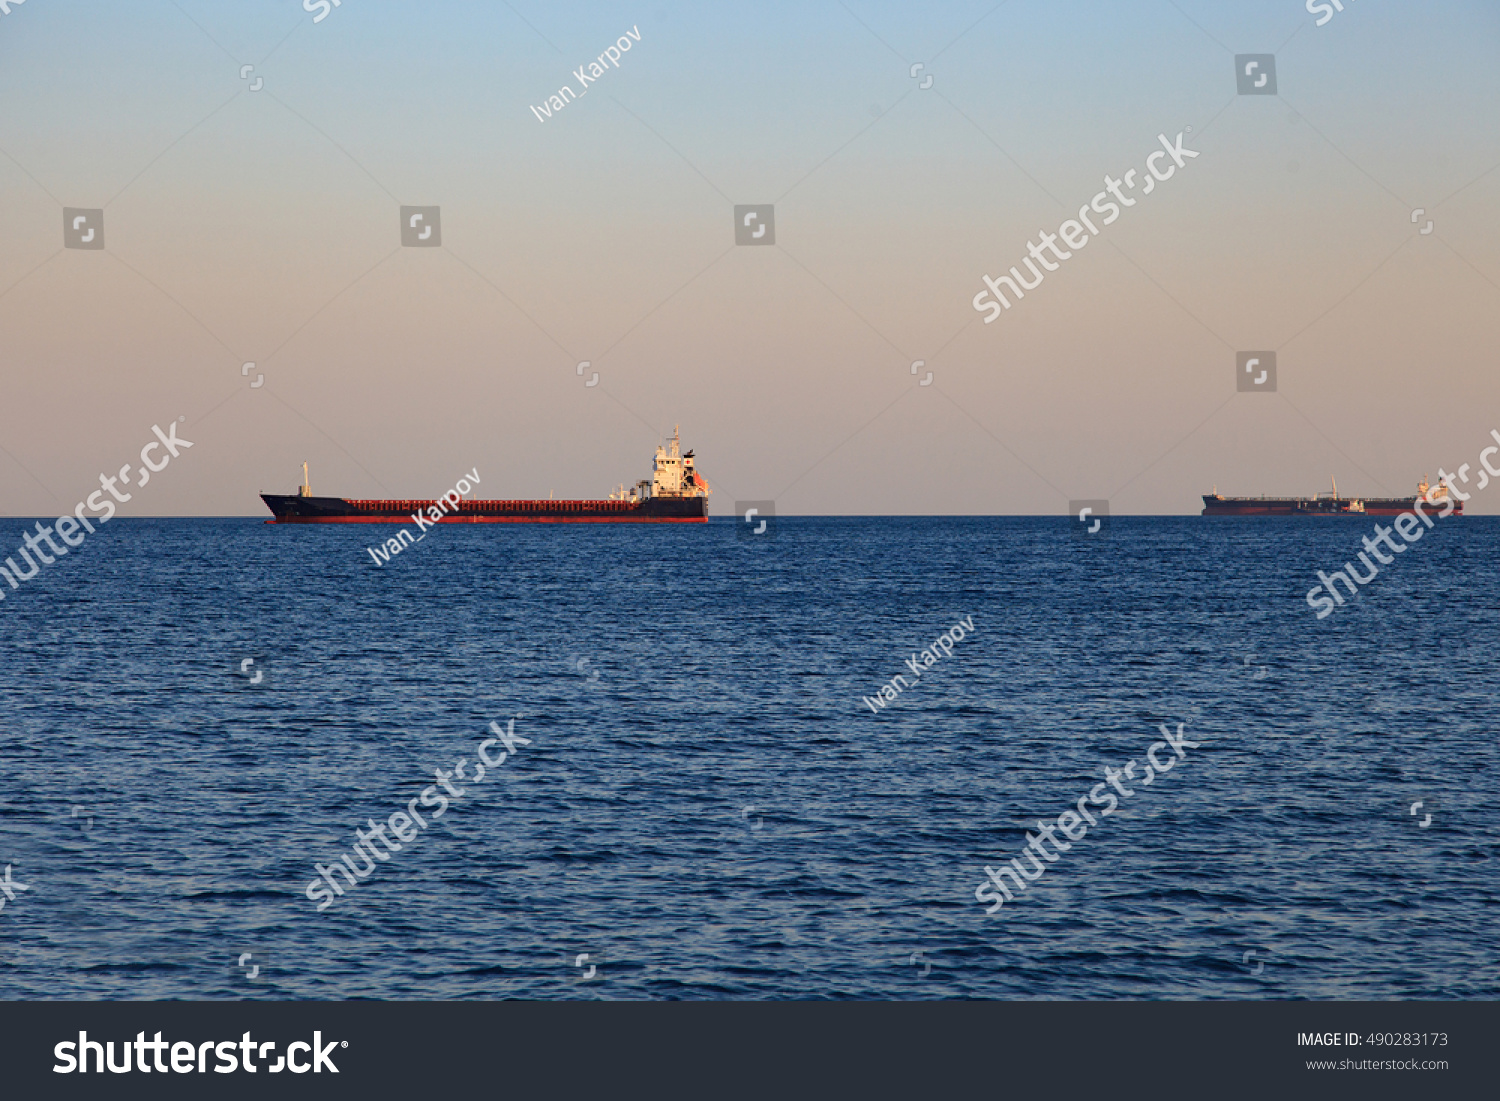 empty cargo ship in the sea #490283173